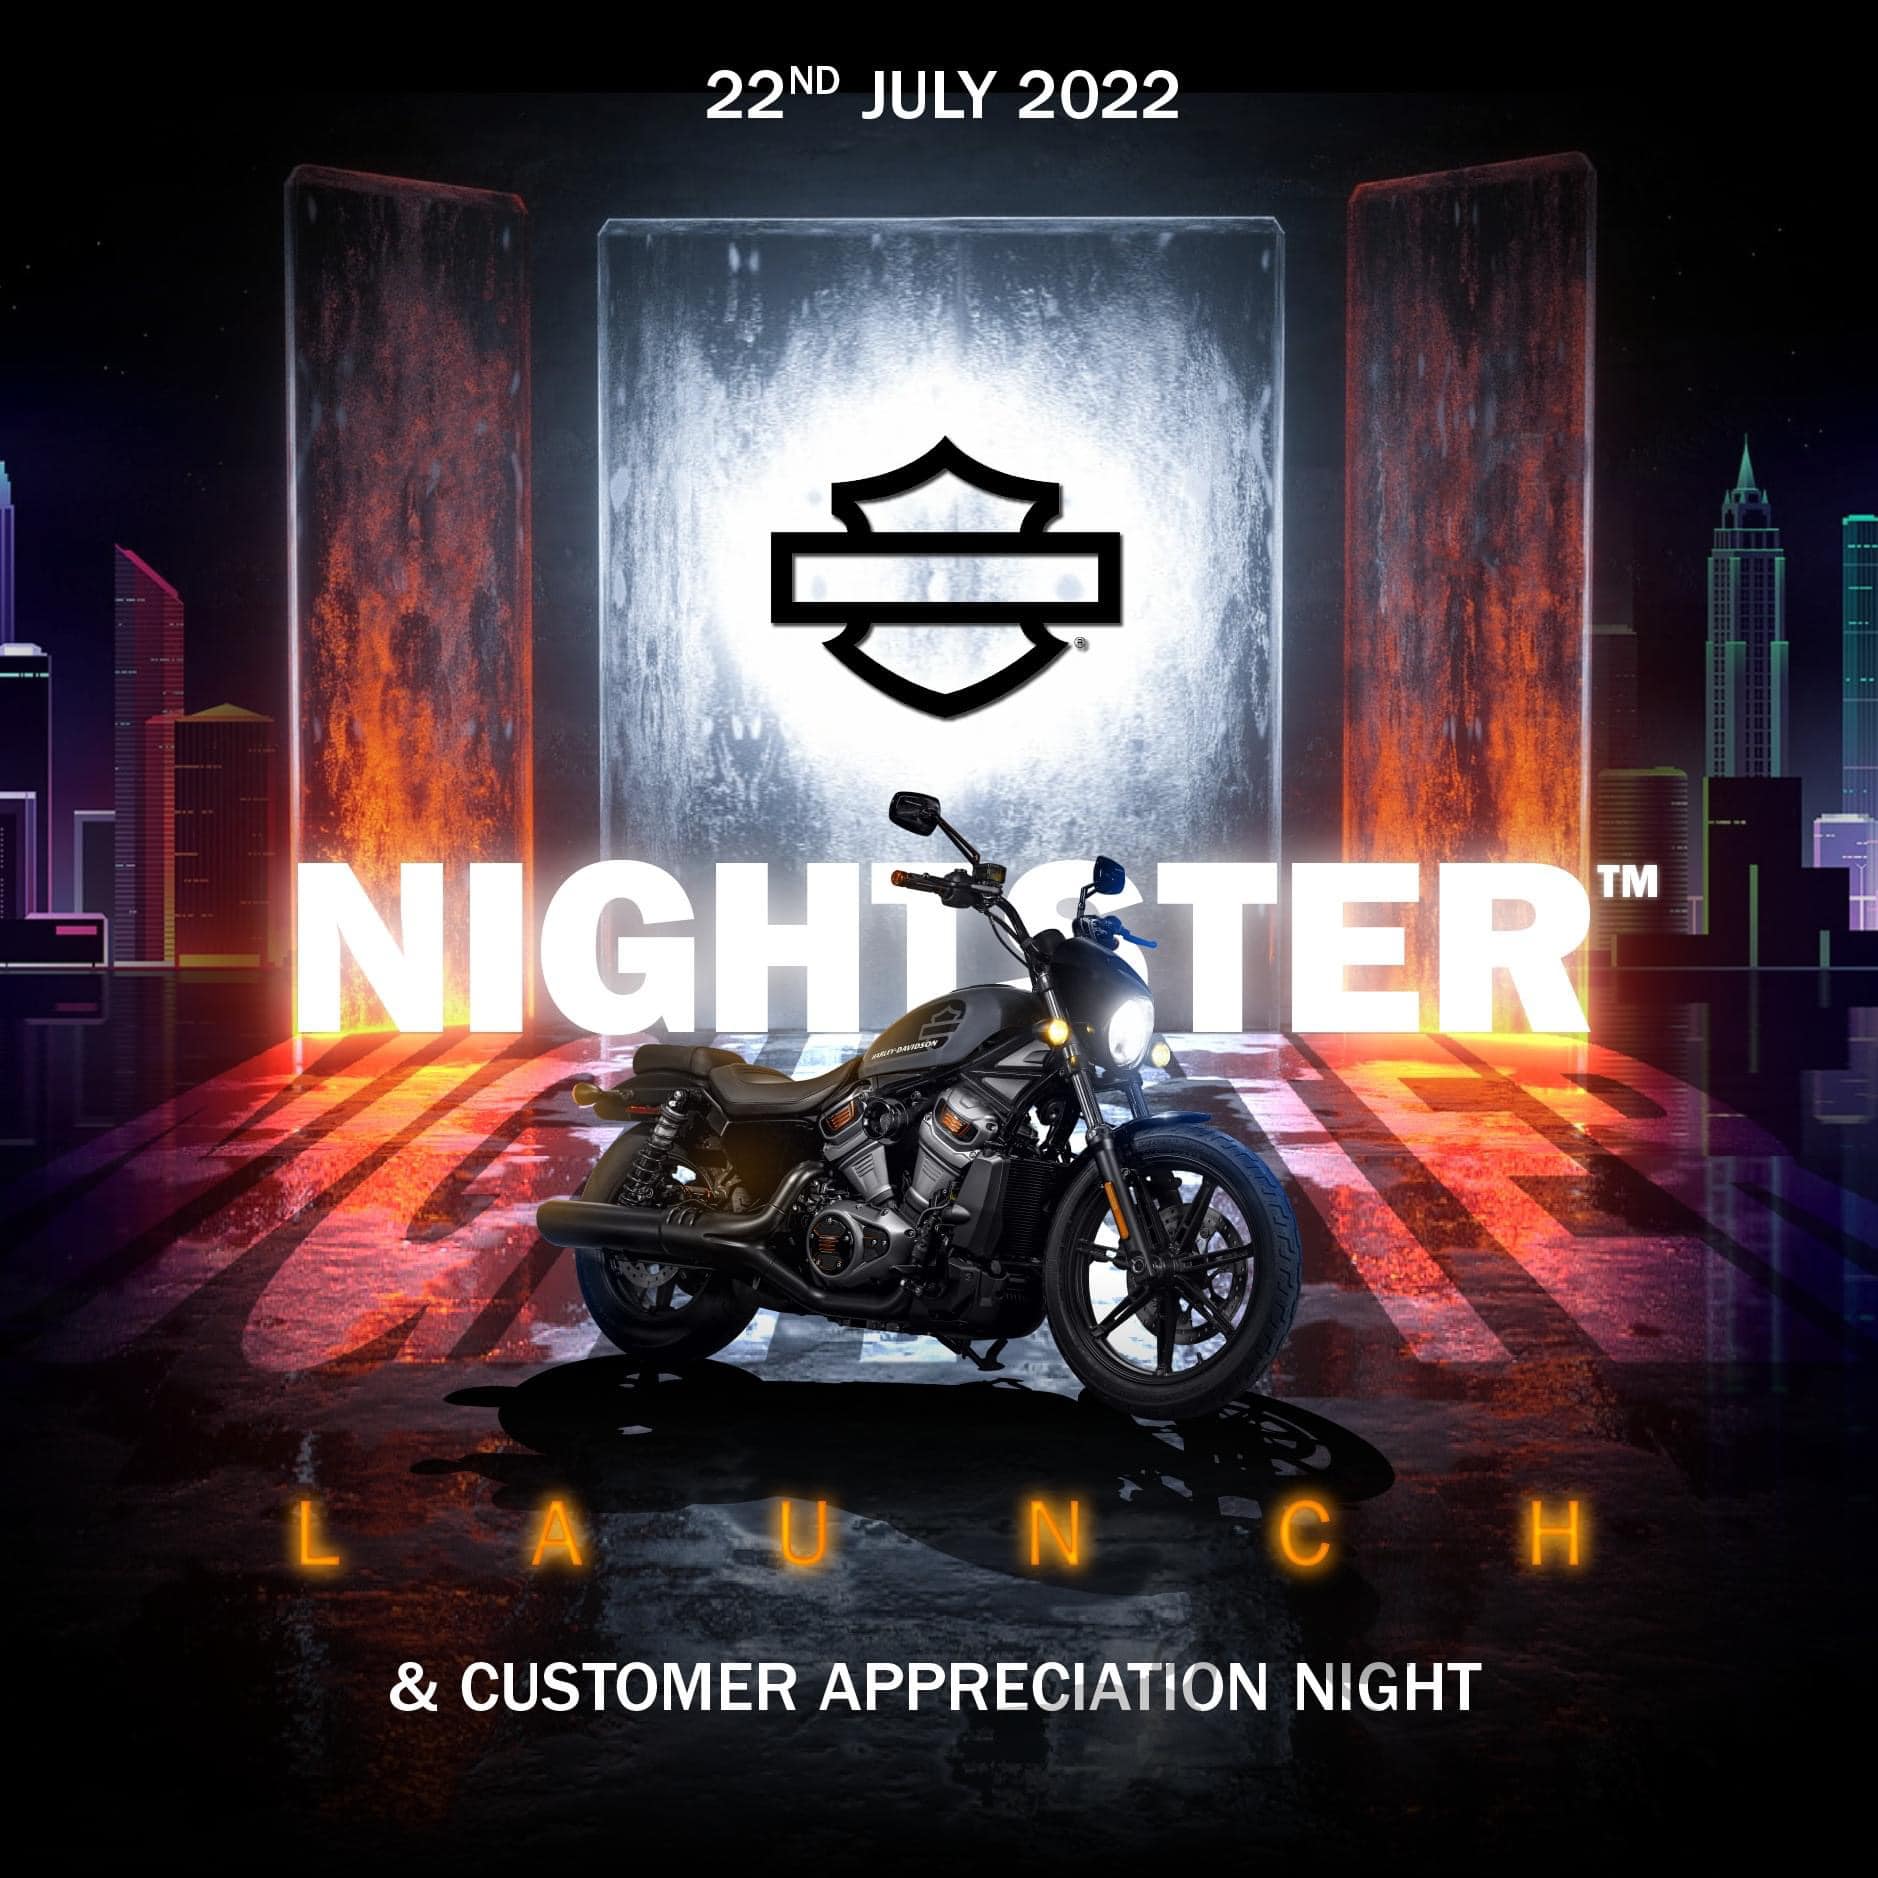 Nightster - Mẫu xe được trông đợi nhất của Harley-Davidson chốt ngày ra mắt